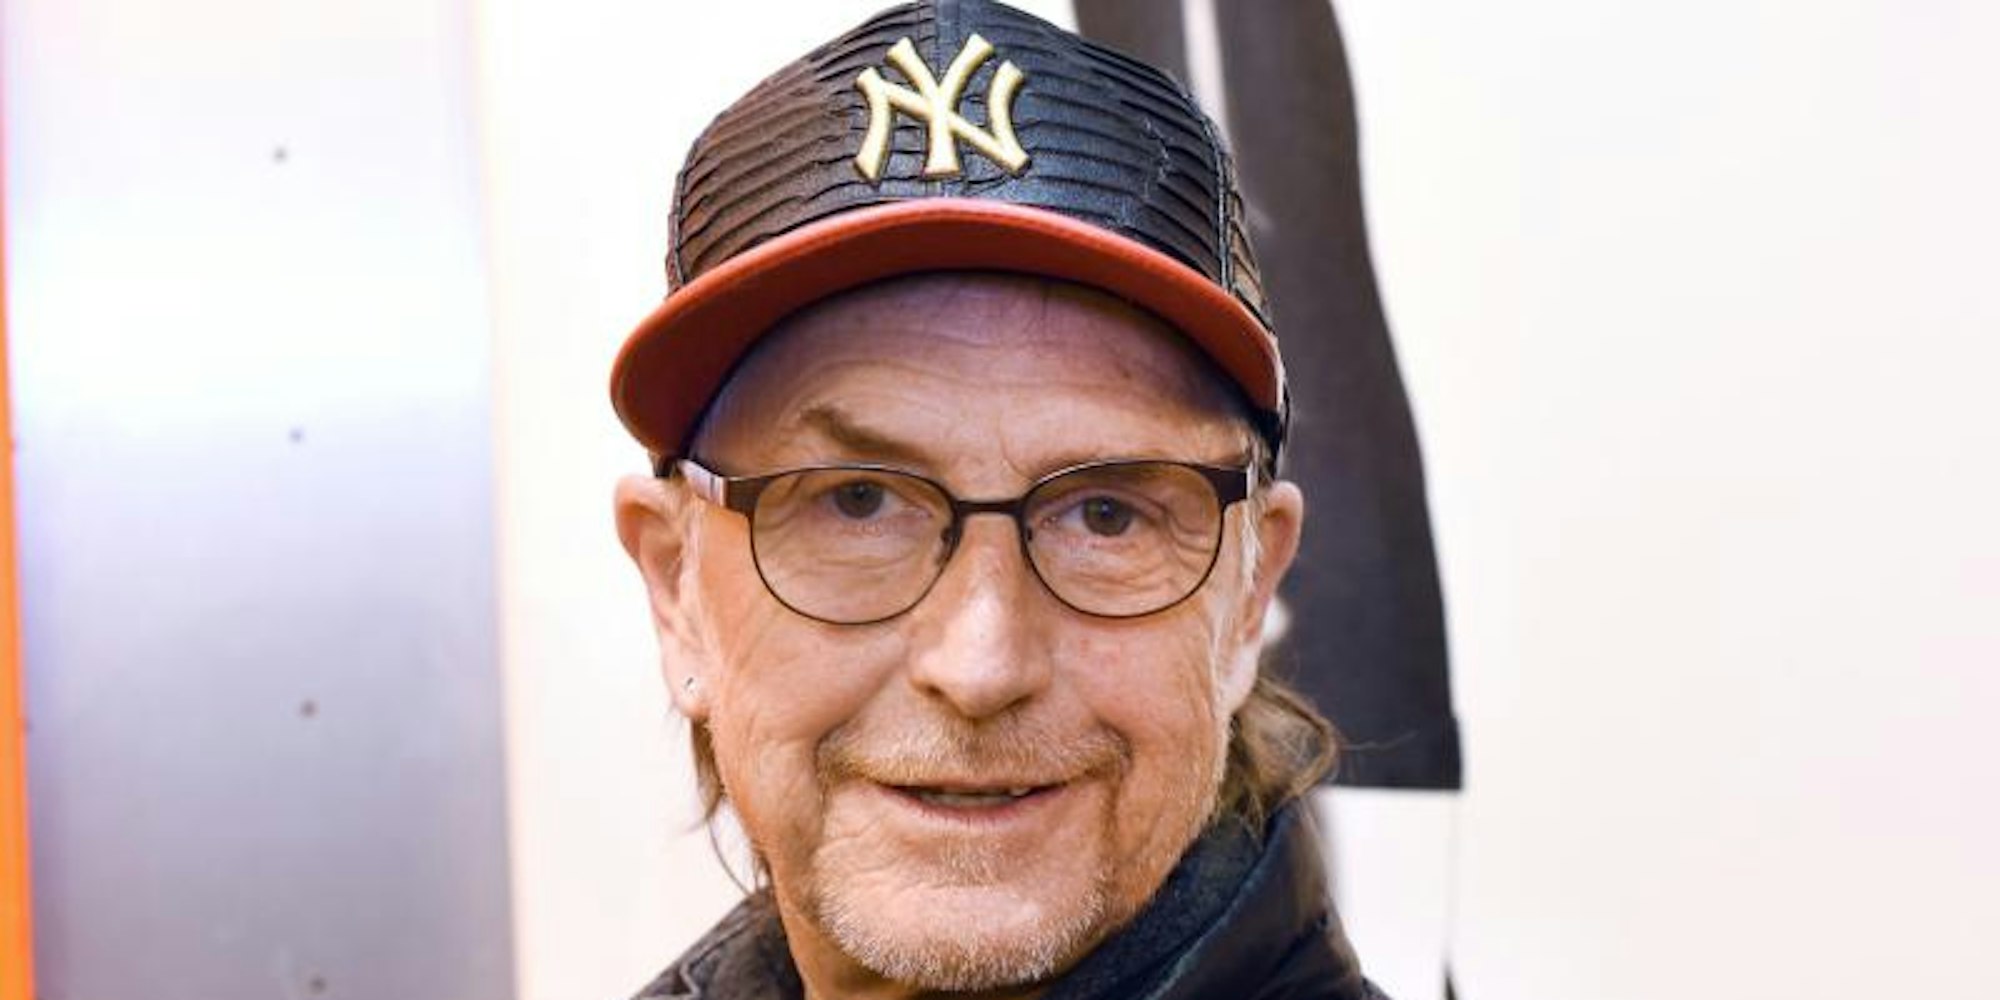 Der 64-jährige Schauspieler Martin Semmelrogge führte zwei Beziehungen parallel.